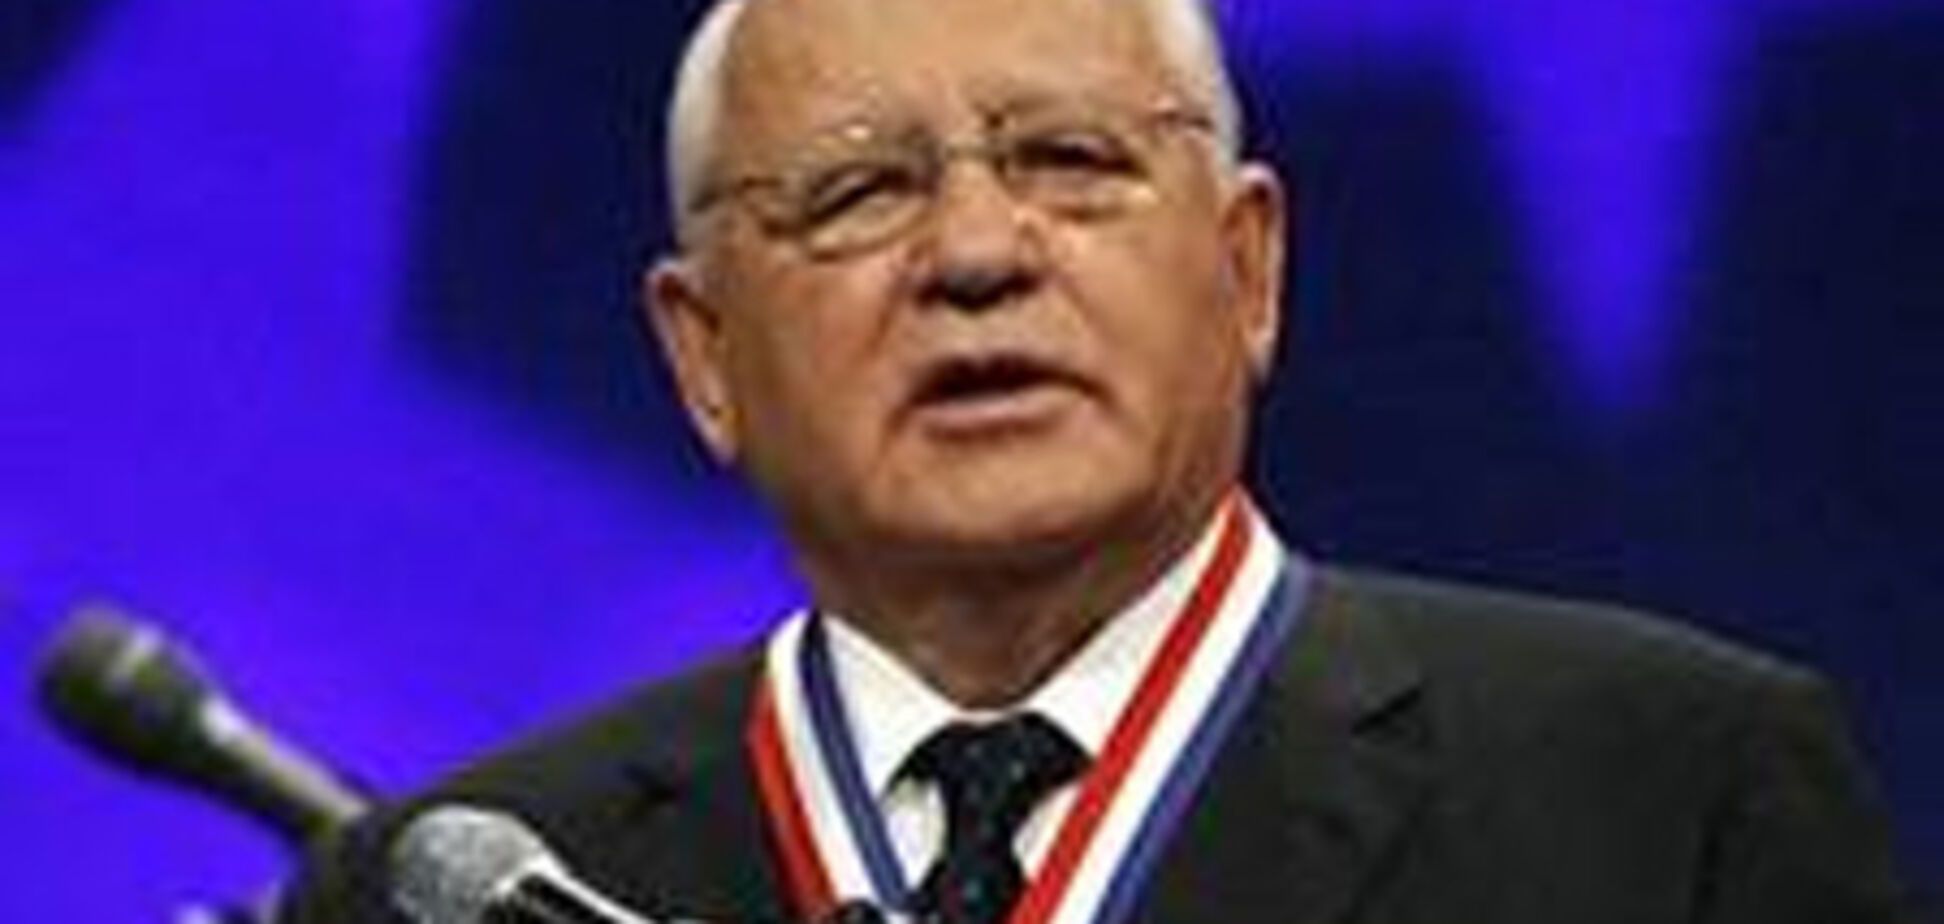 Горбачев отпразднует 80-летие с Шэрон Стоун